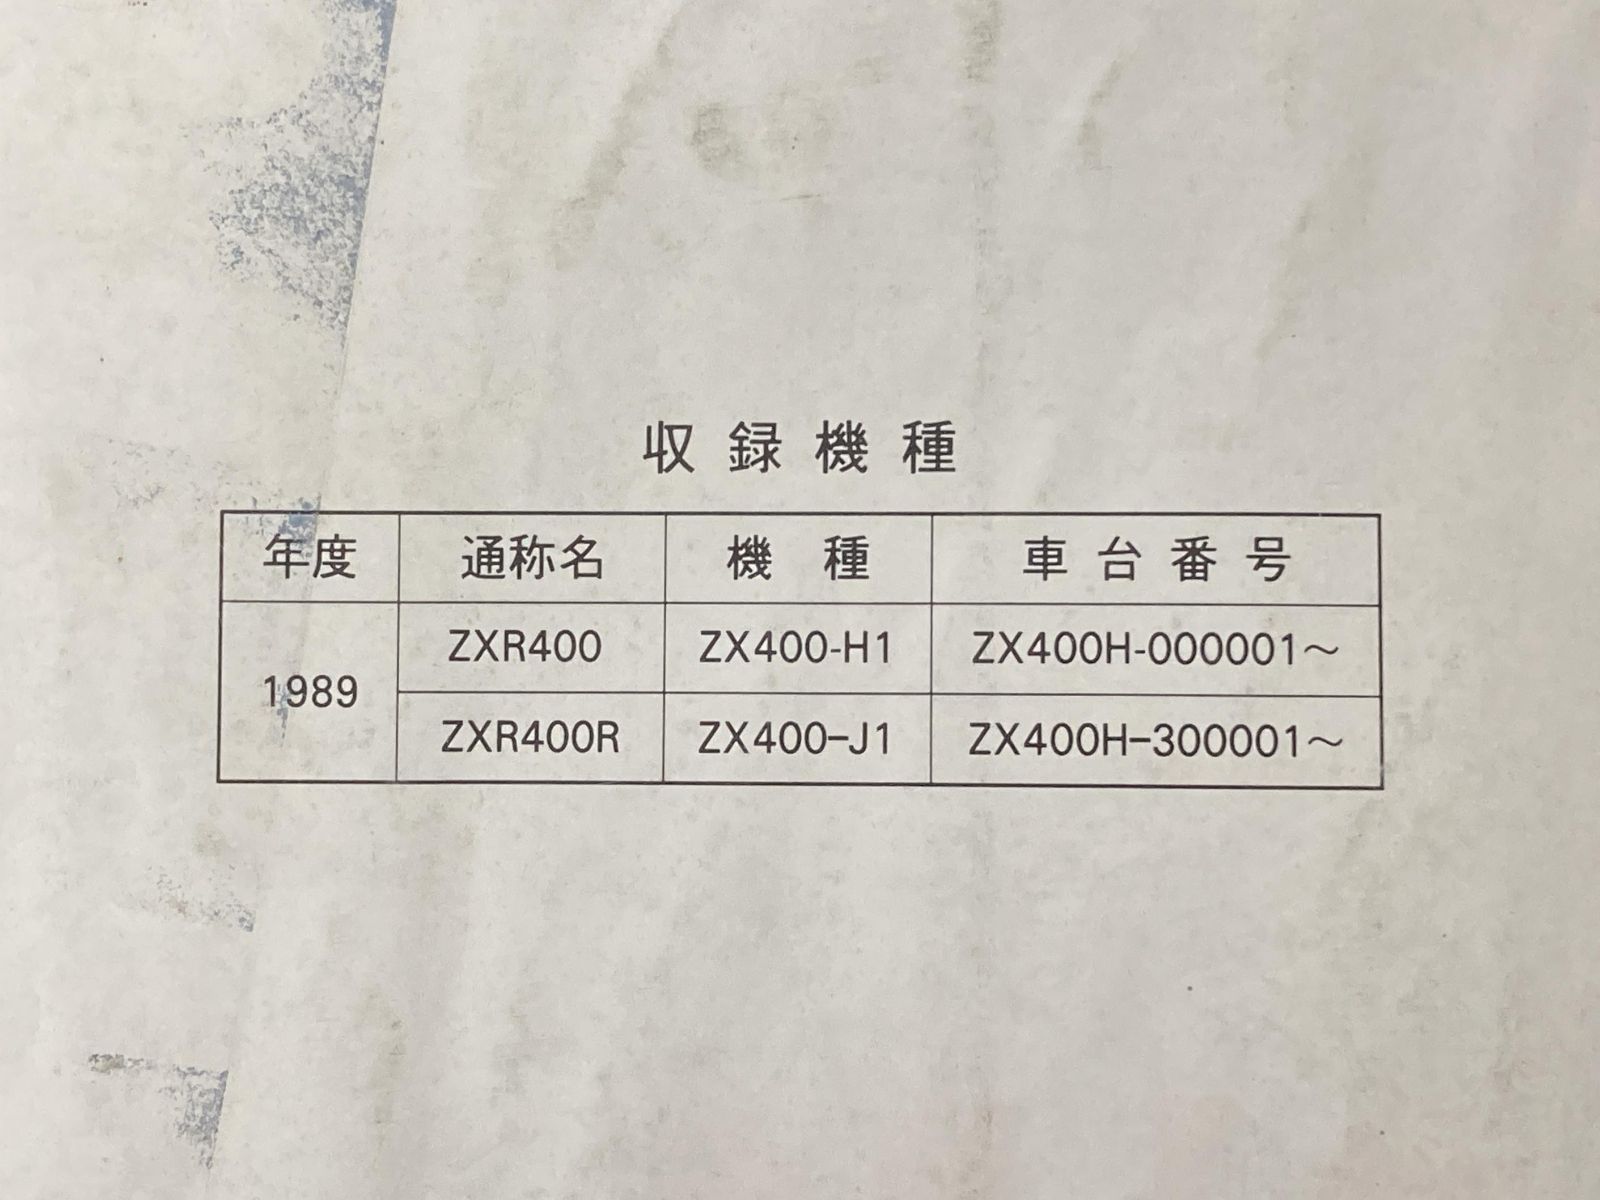 NinjaZX-9R サービスマニュアル 1版 カワサキ 正規  バイク 整備書 ZX900-B1 ZX900B-000001 配線図有り 第1刷 車検 整備情報:11710545